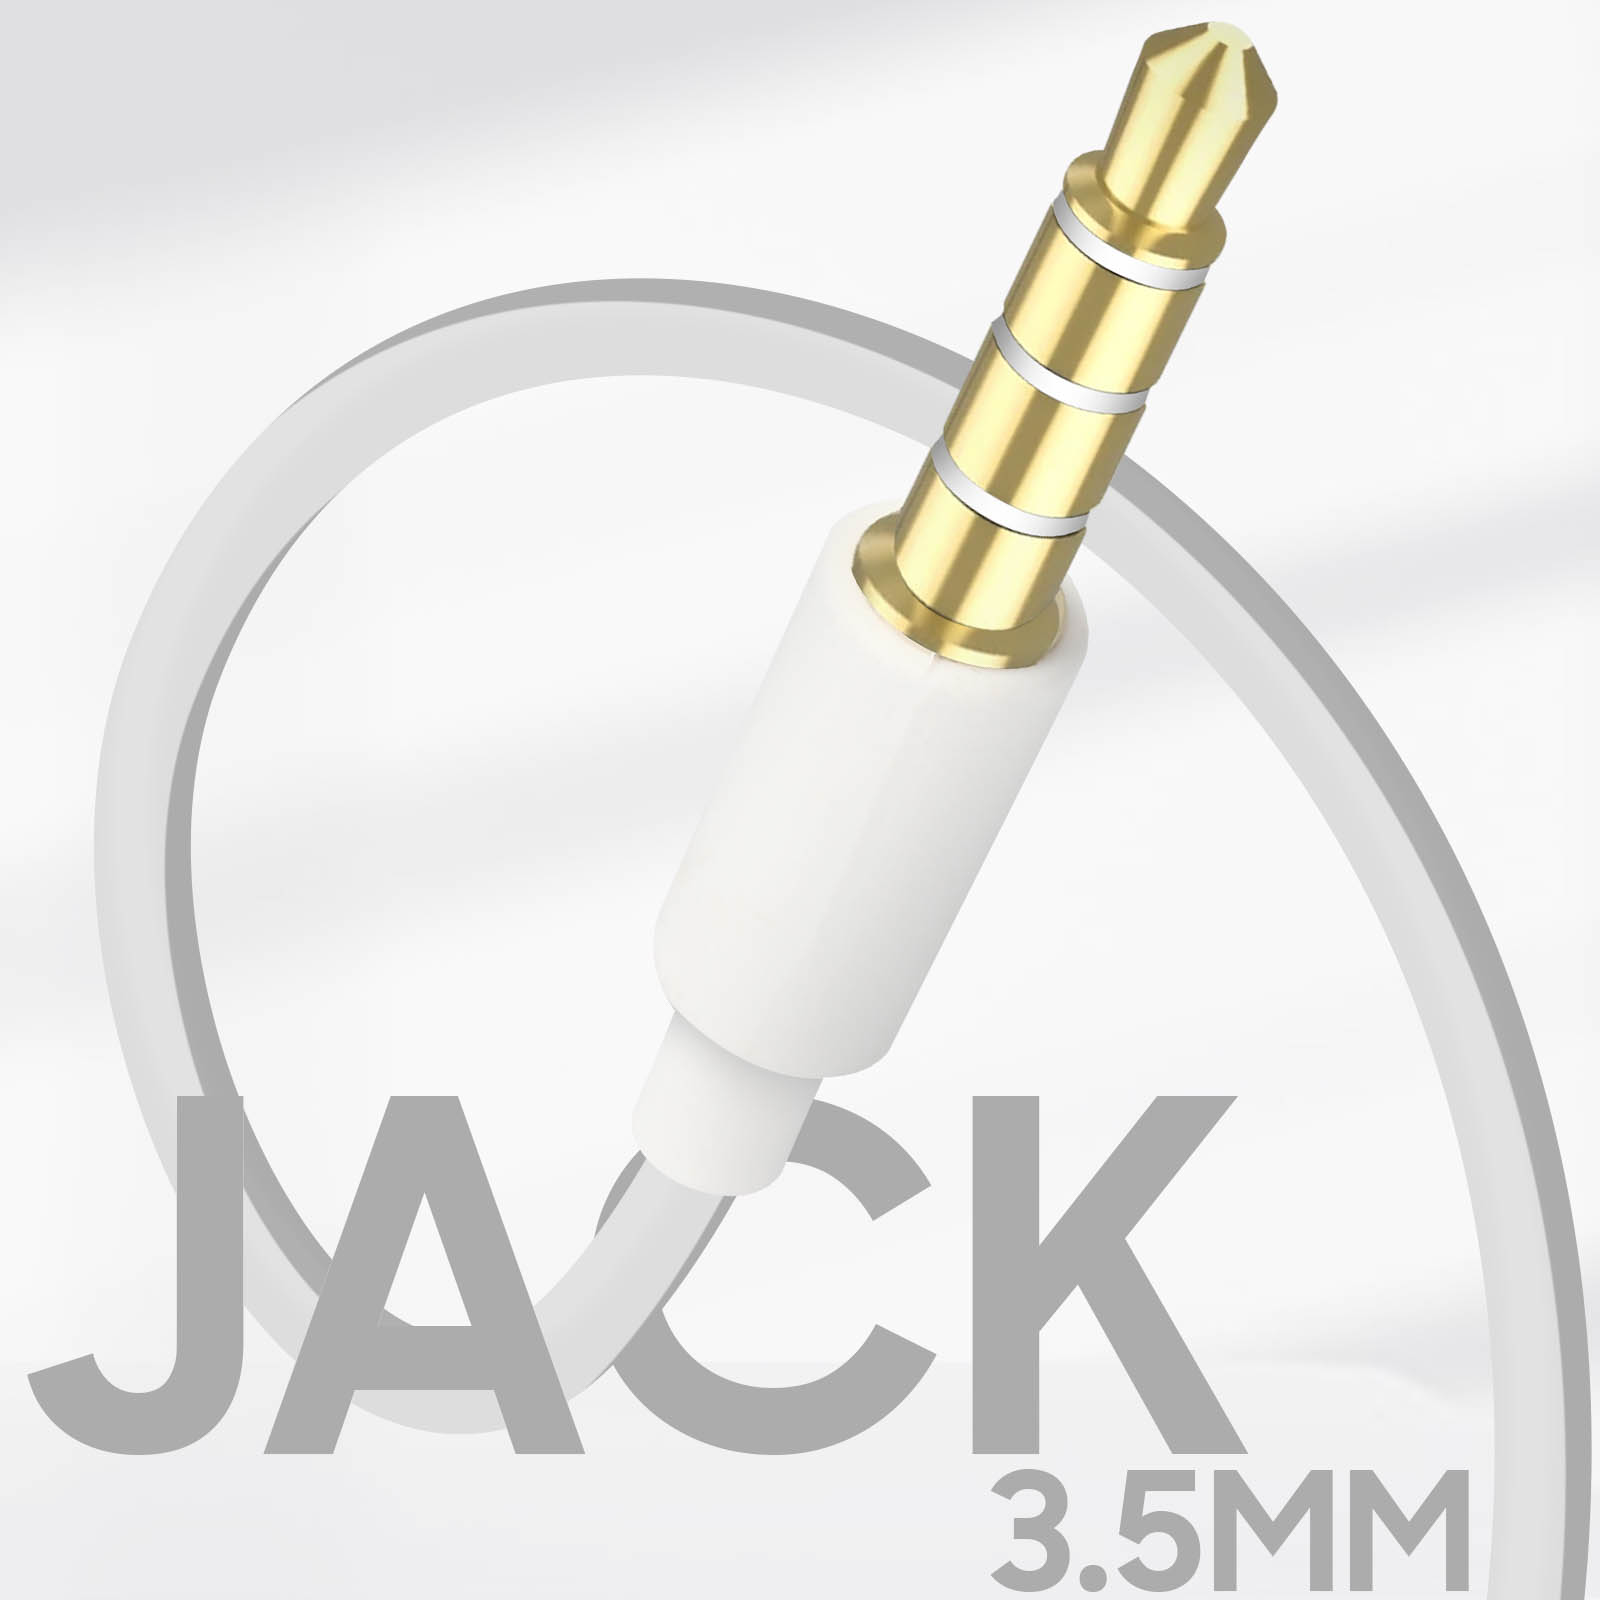 Avizar Ecouteurs Noir pour Téléphones portables avec prise Jack 2.5 mm ou Jack  3.5 mm - Kit piéton et Casque - LDLC